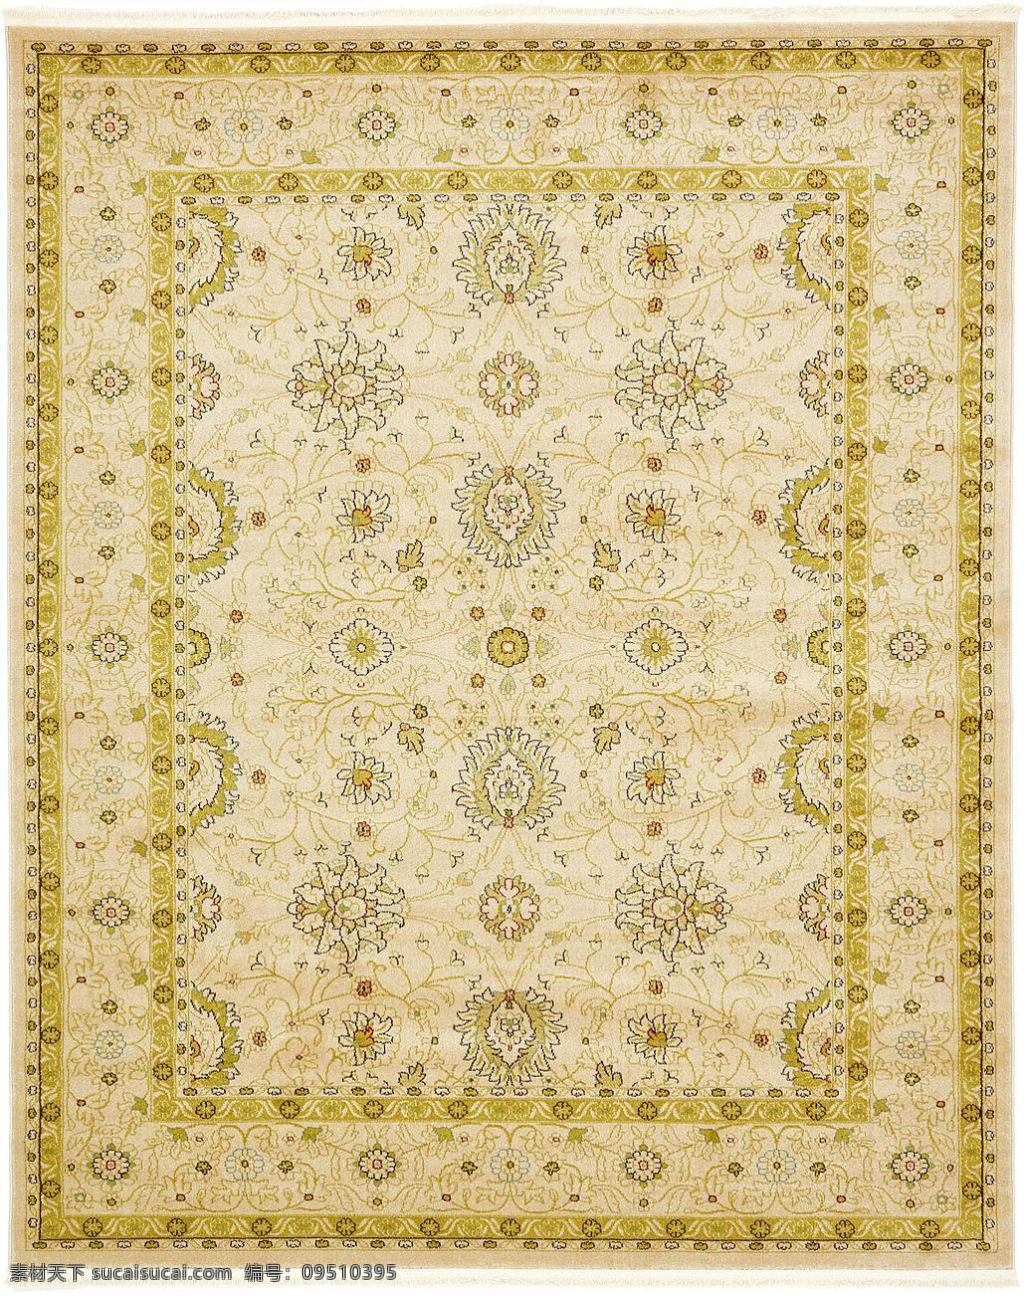 黄色 边框 花卉 图形 经典 家庭 地毯 贴图 图案贴图 豹纹贴图 图案 地毯拼图 方形贴图 家庭式地毯 花边地毯 欧式 风格